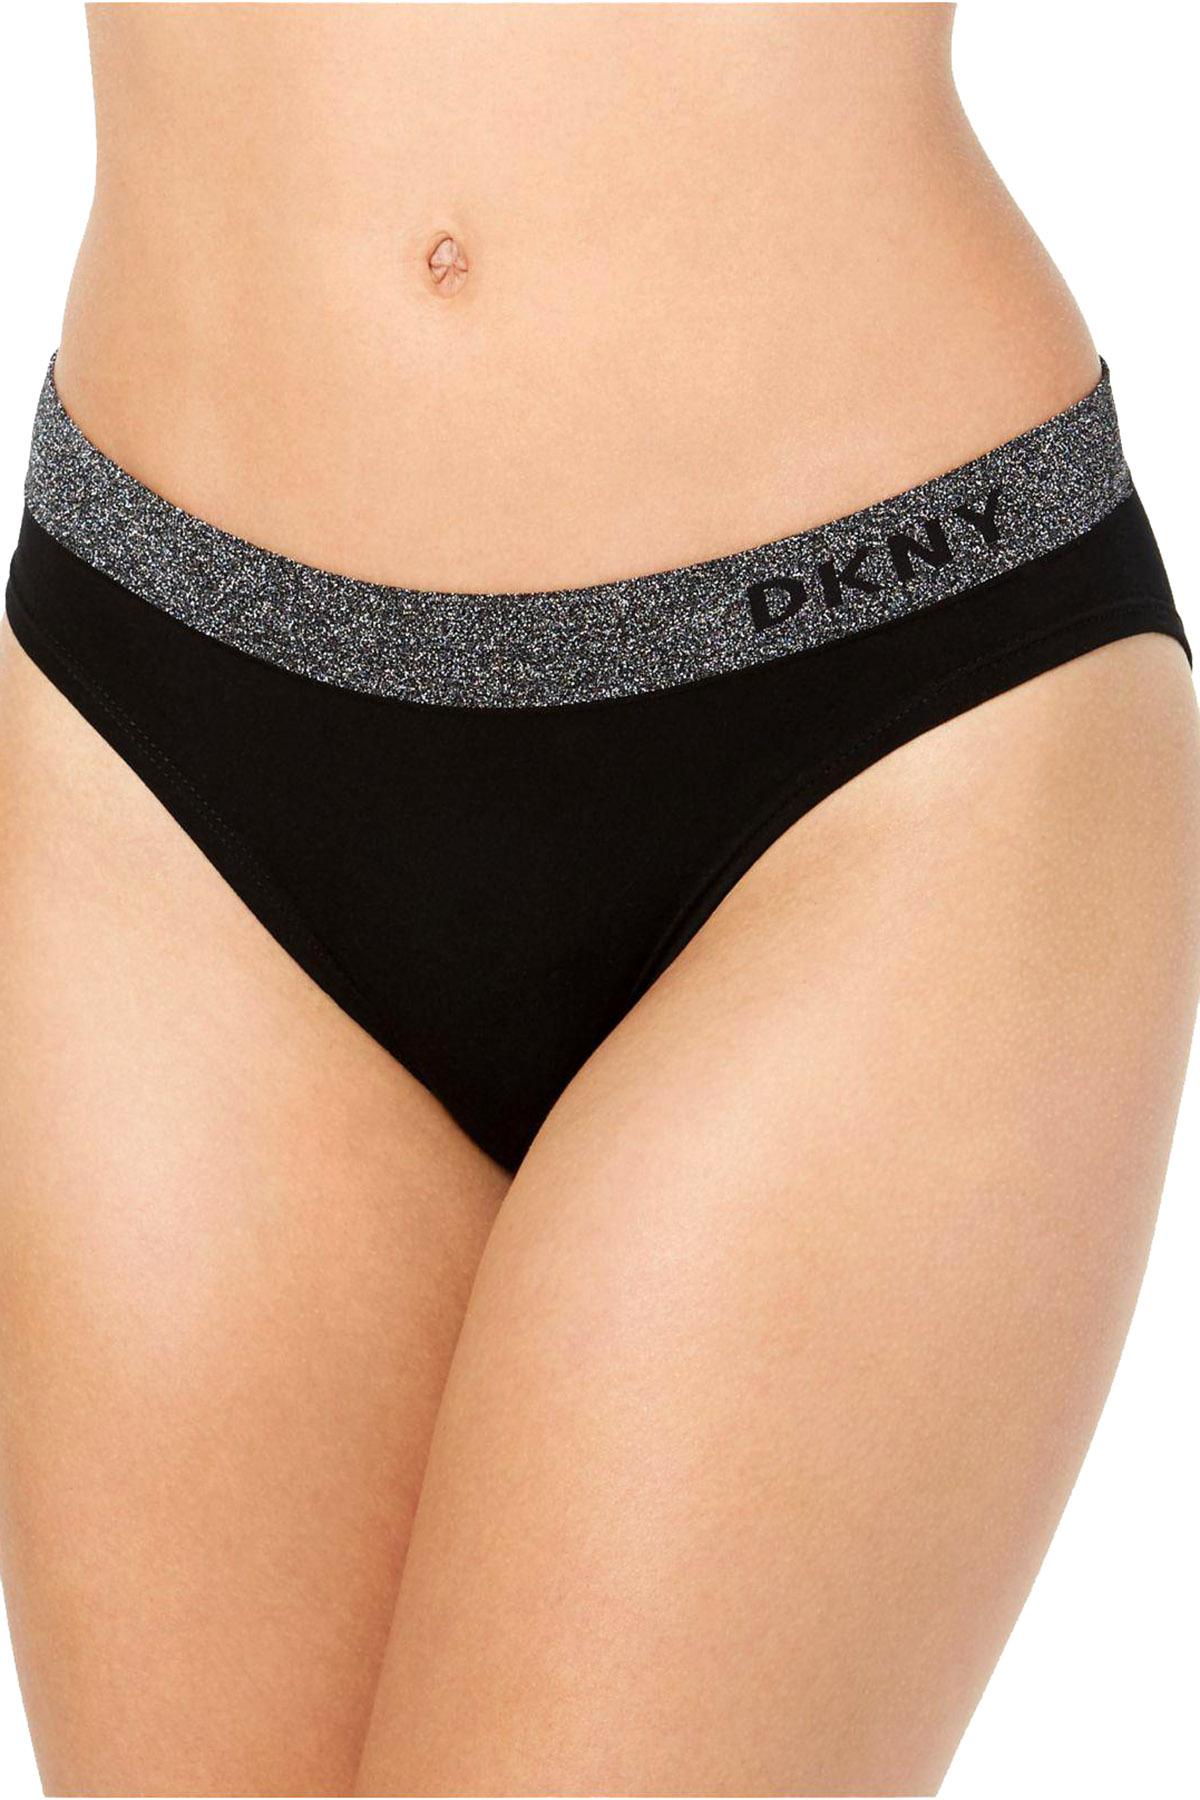 DKNY Black/Silver Sparkle Seamless Stretch Bikini Brief